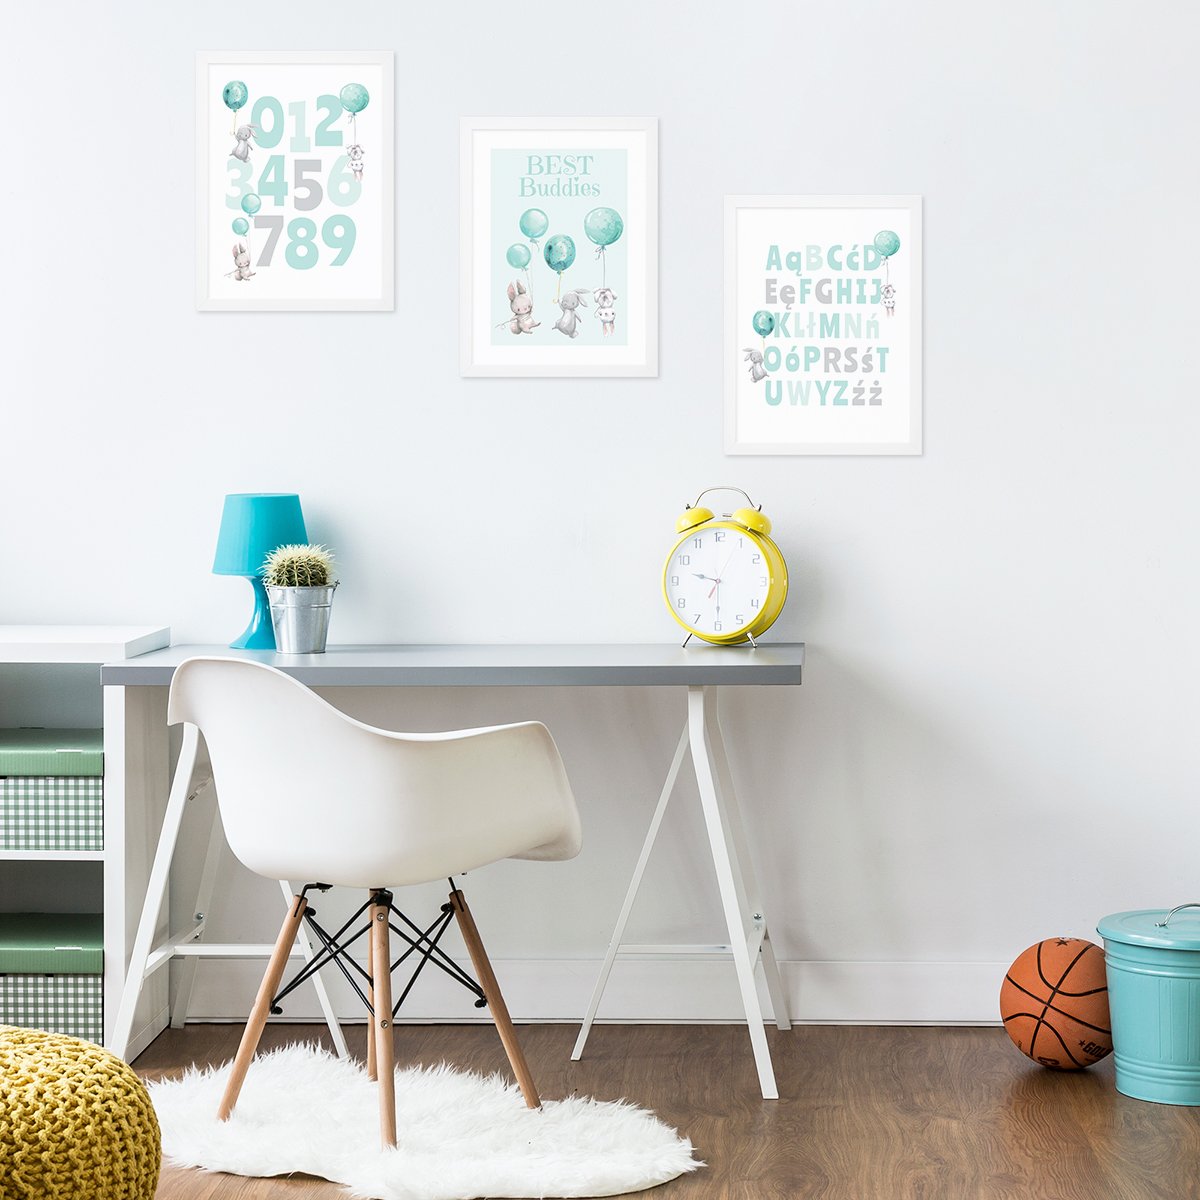 Plakaty na ścianę do pokoju chłopca z alfabetem, cyframi i królikami w białych ramkach zawieszone nad biurkiem - pomysł na dekorację ścian pokoju przedszkolaka#kolor_mietowy